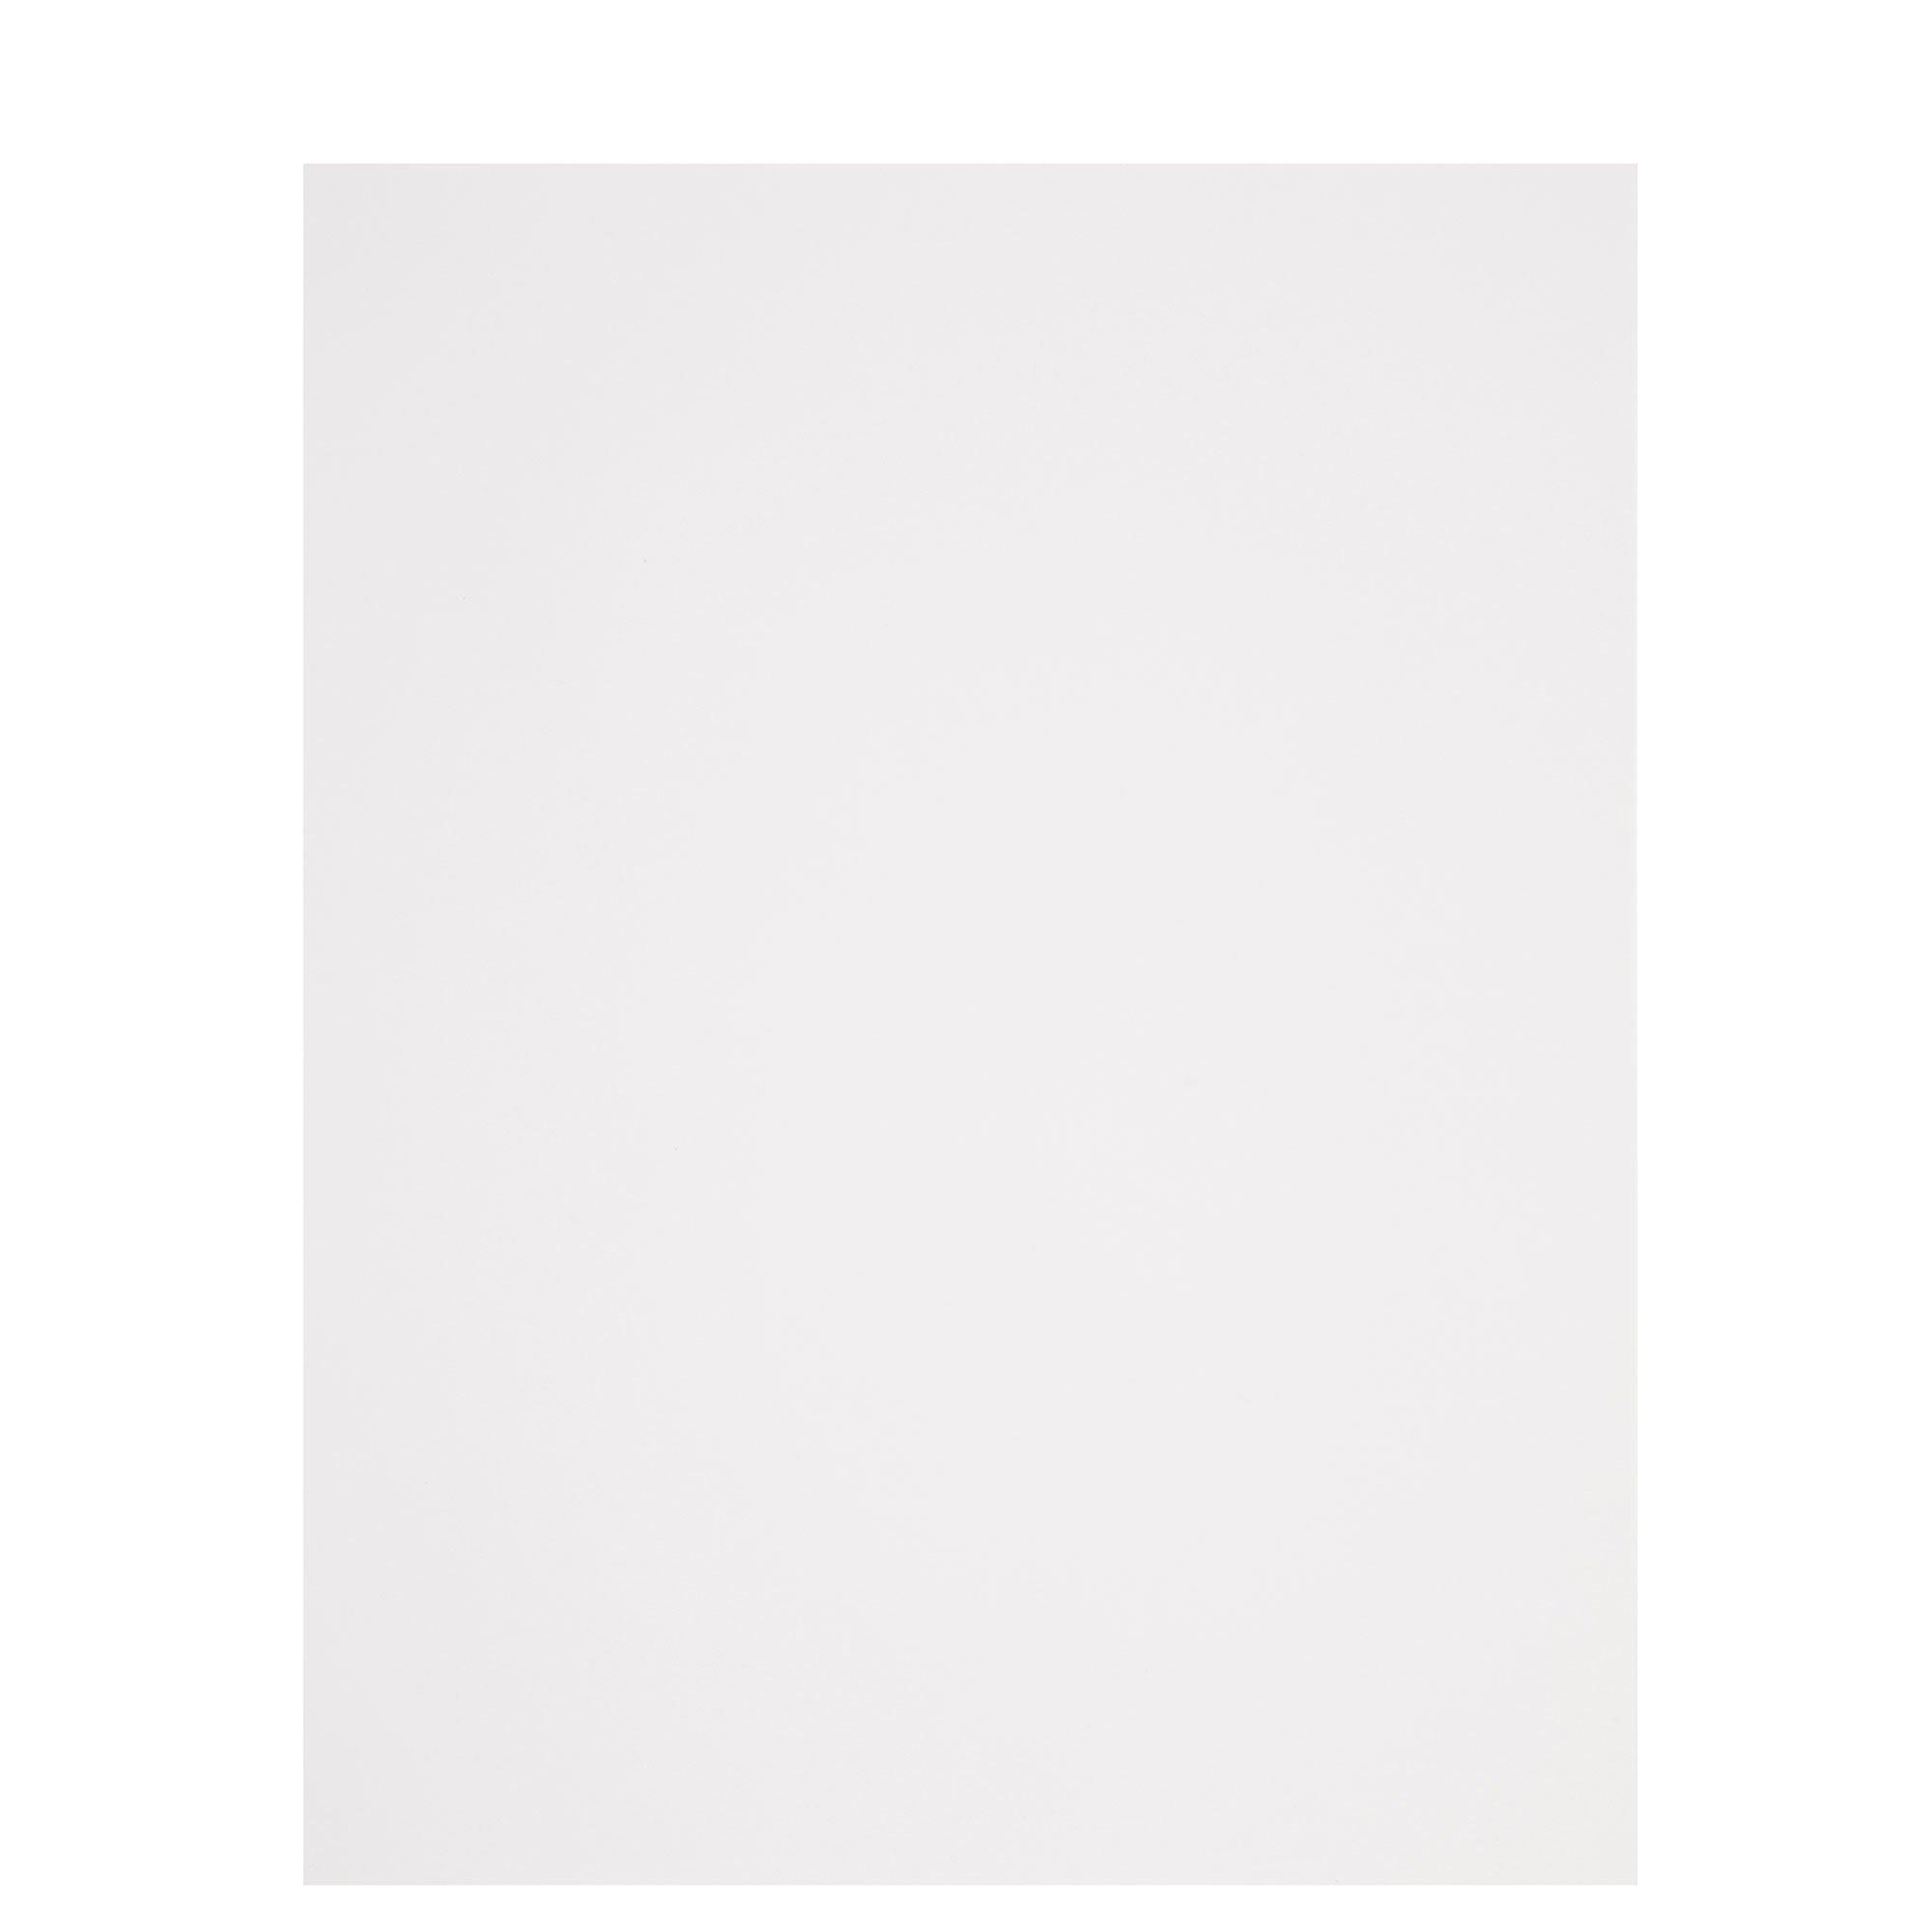  YINUOYOUJIA 100 Sheets White Cardstock 8.5 x 11